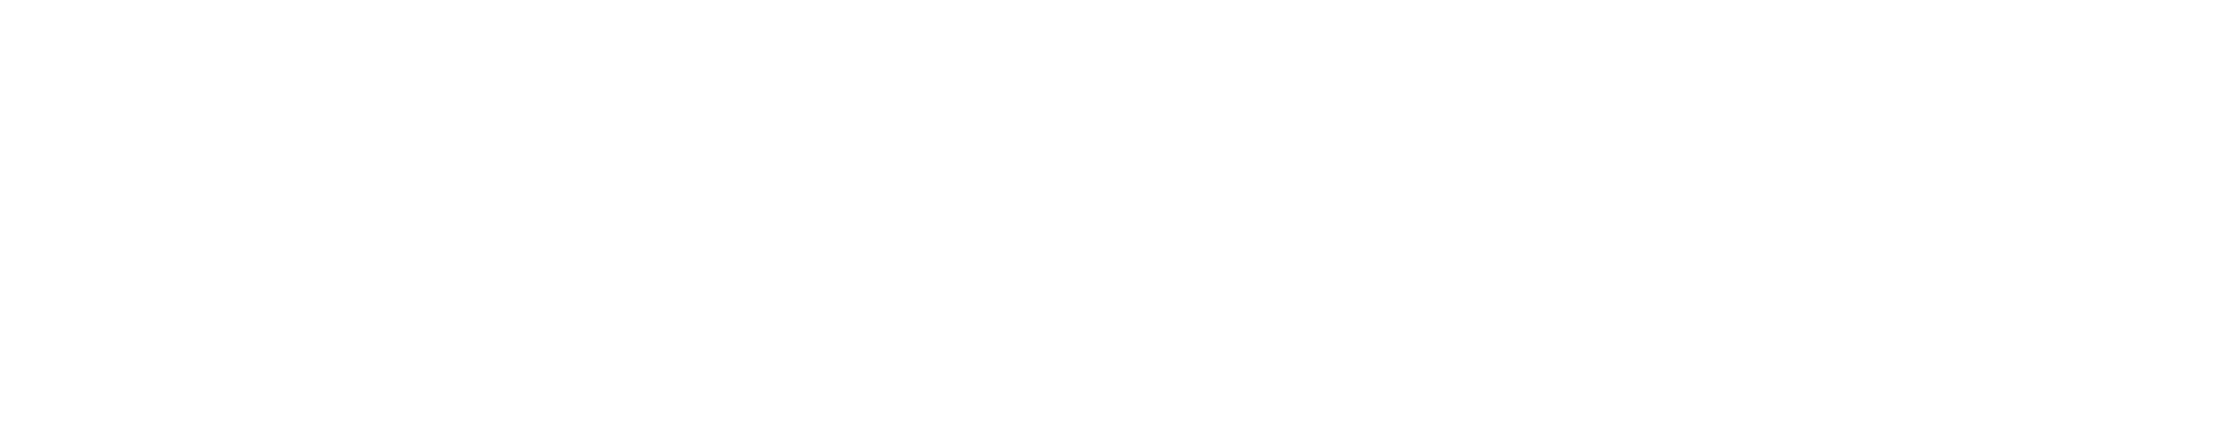 Oculus-Logo.png